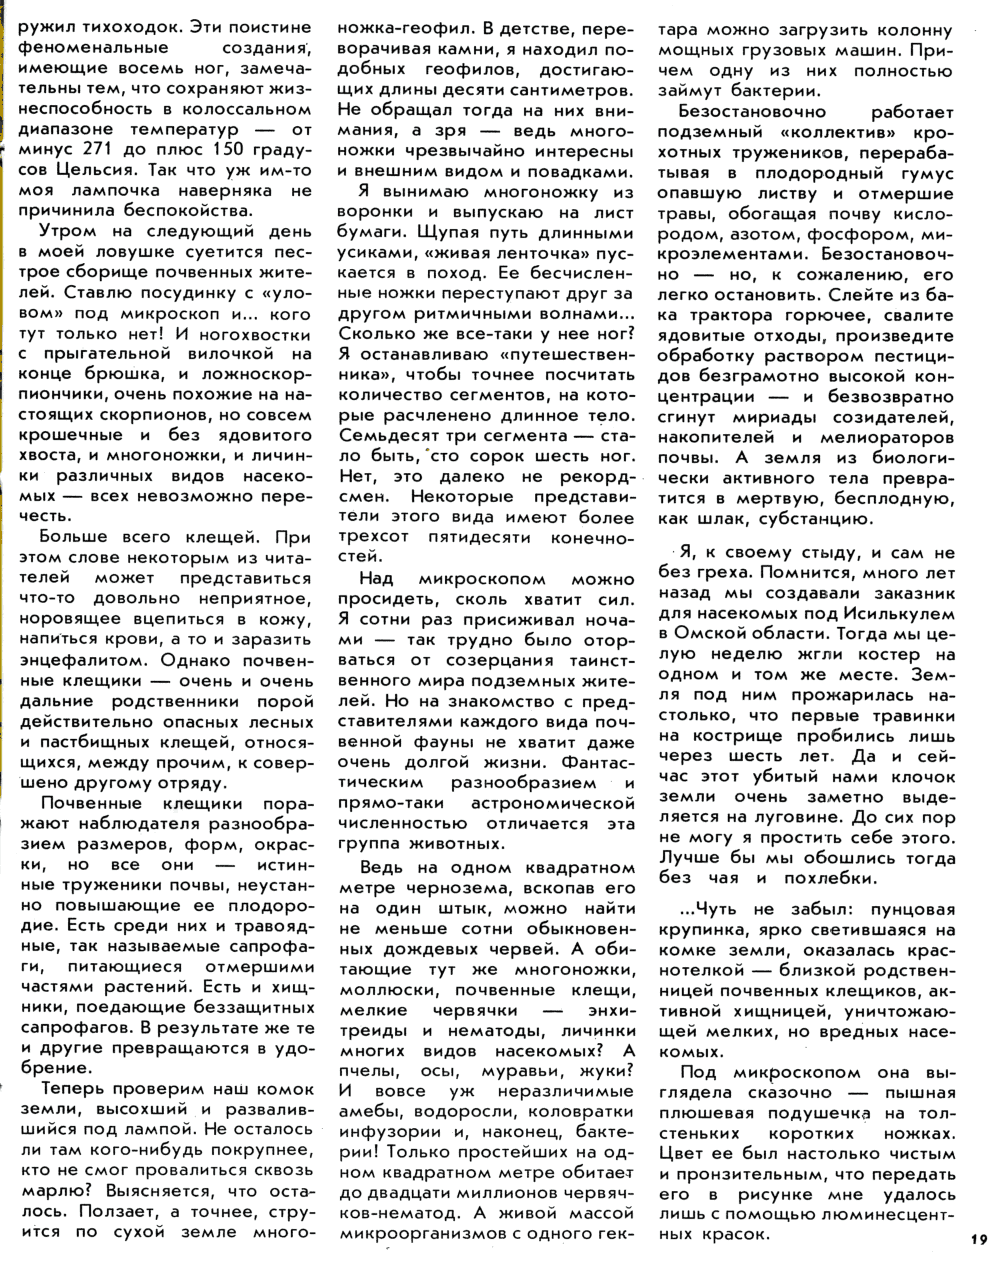 Живая пашня. В.С. Гребенников. Свет. Природа и человек, 1983, №8, с.17-19. Фотокопия №3